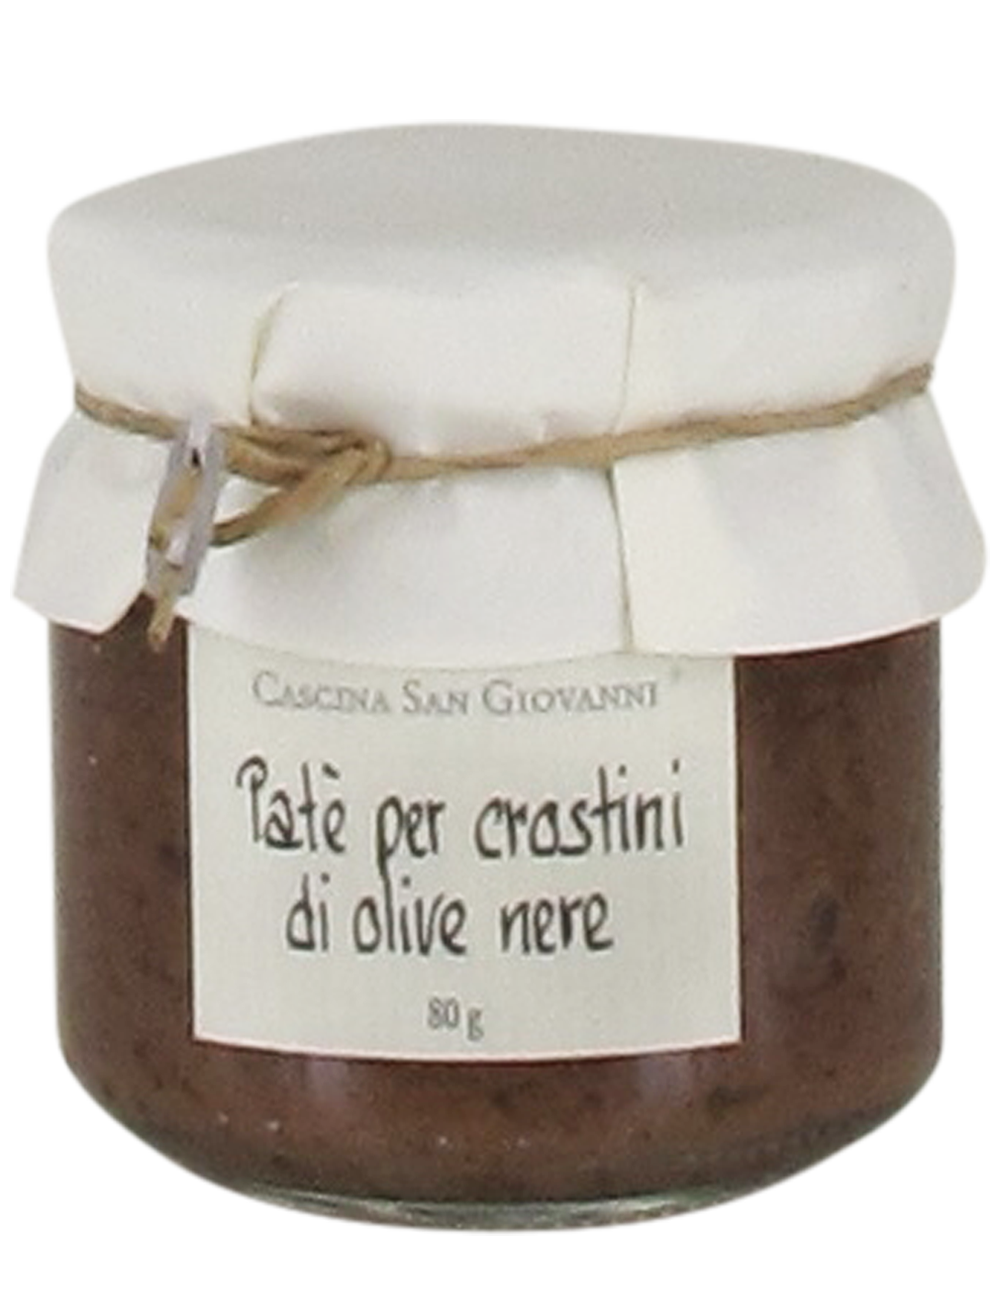 Paté di Olive nere (Schwarze Olivencreme)